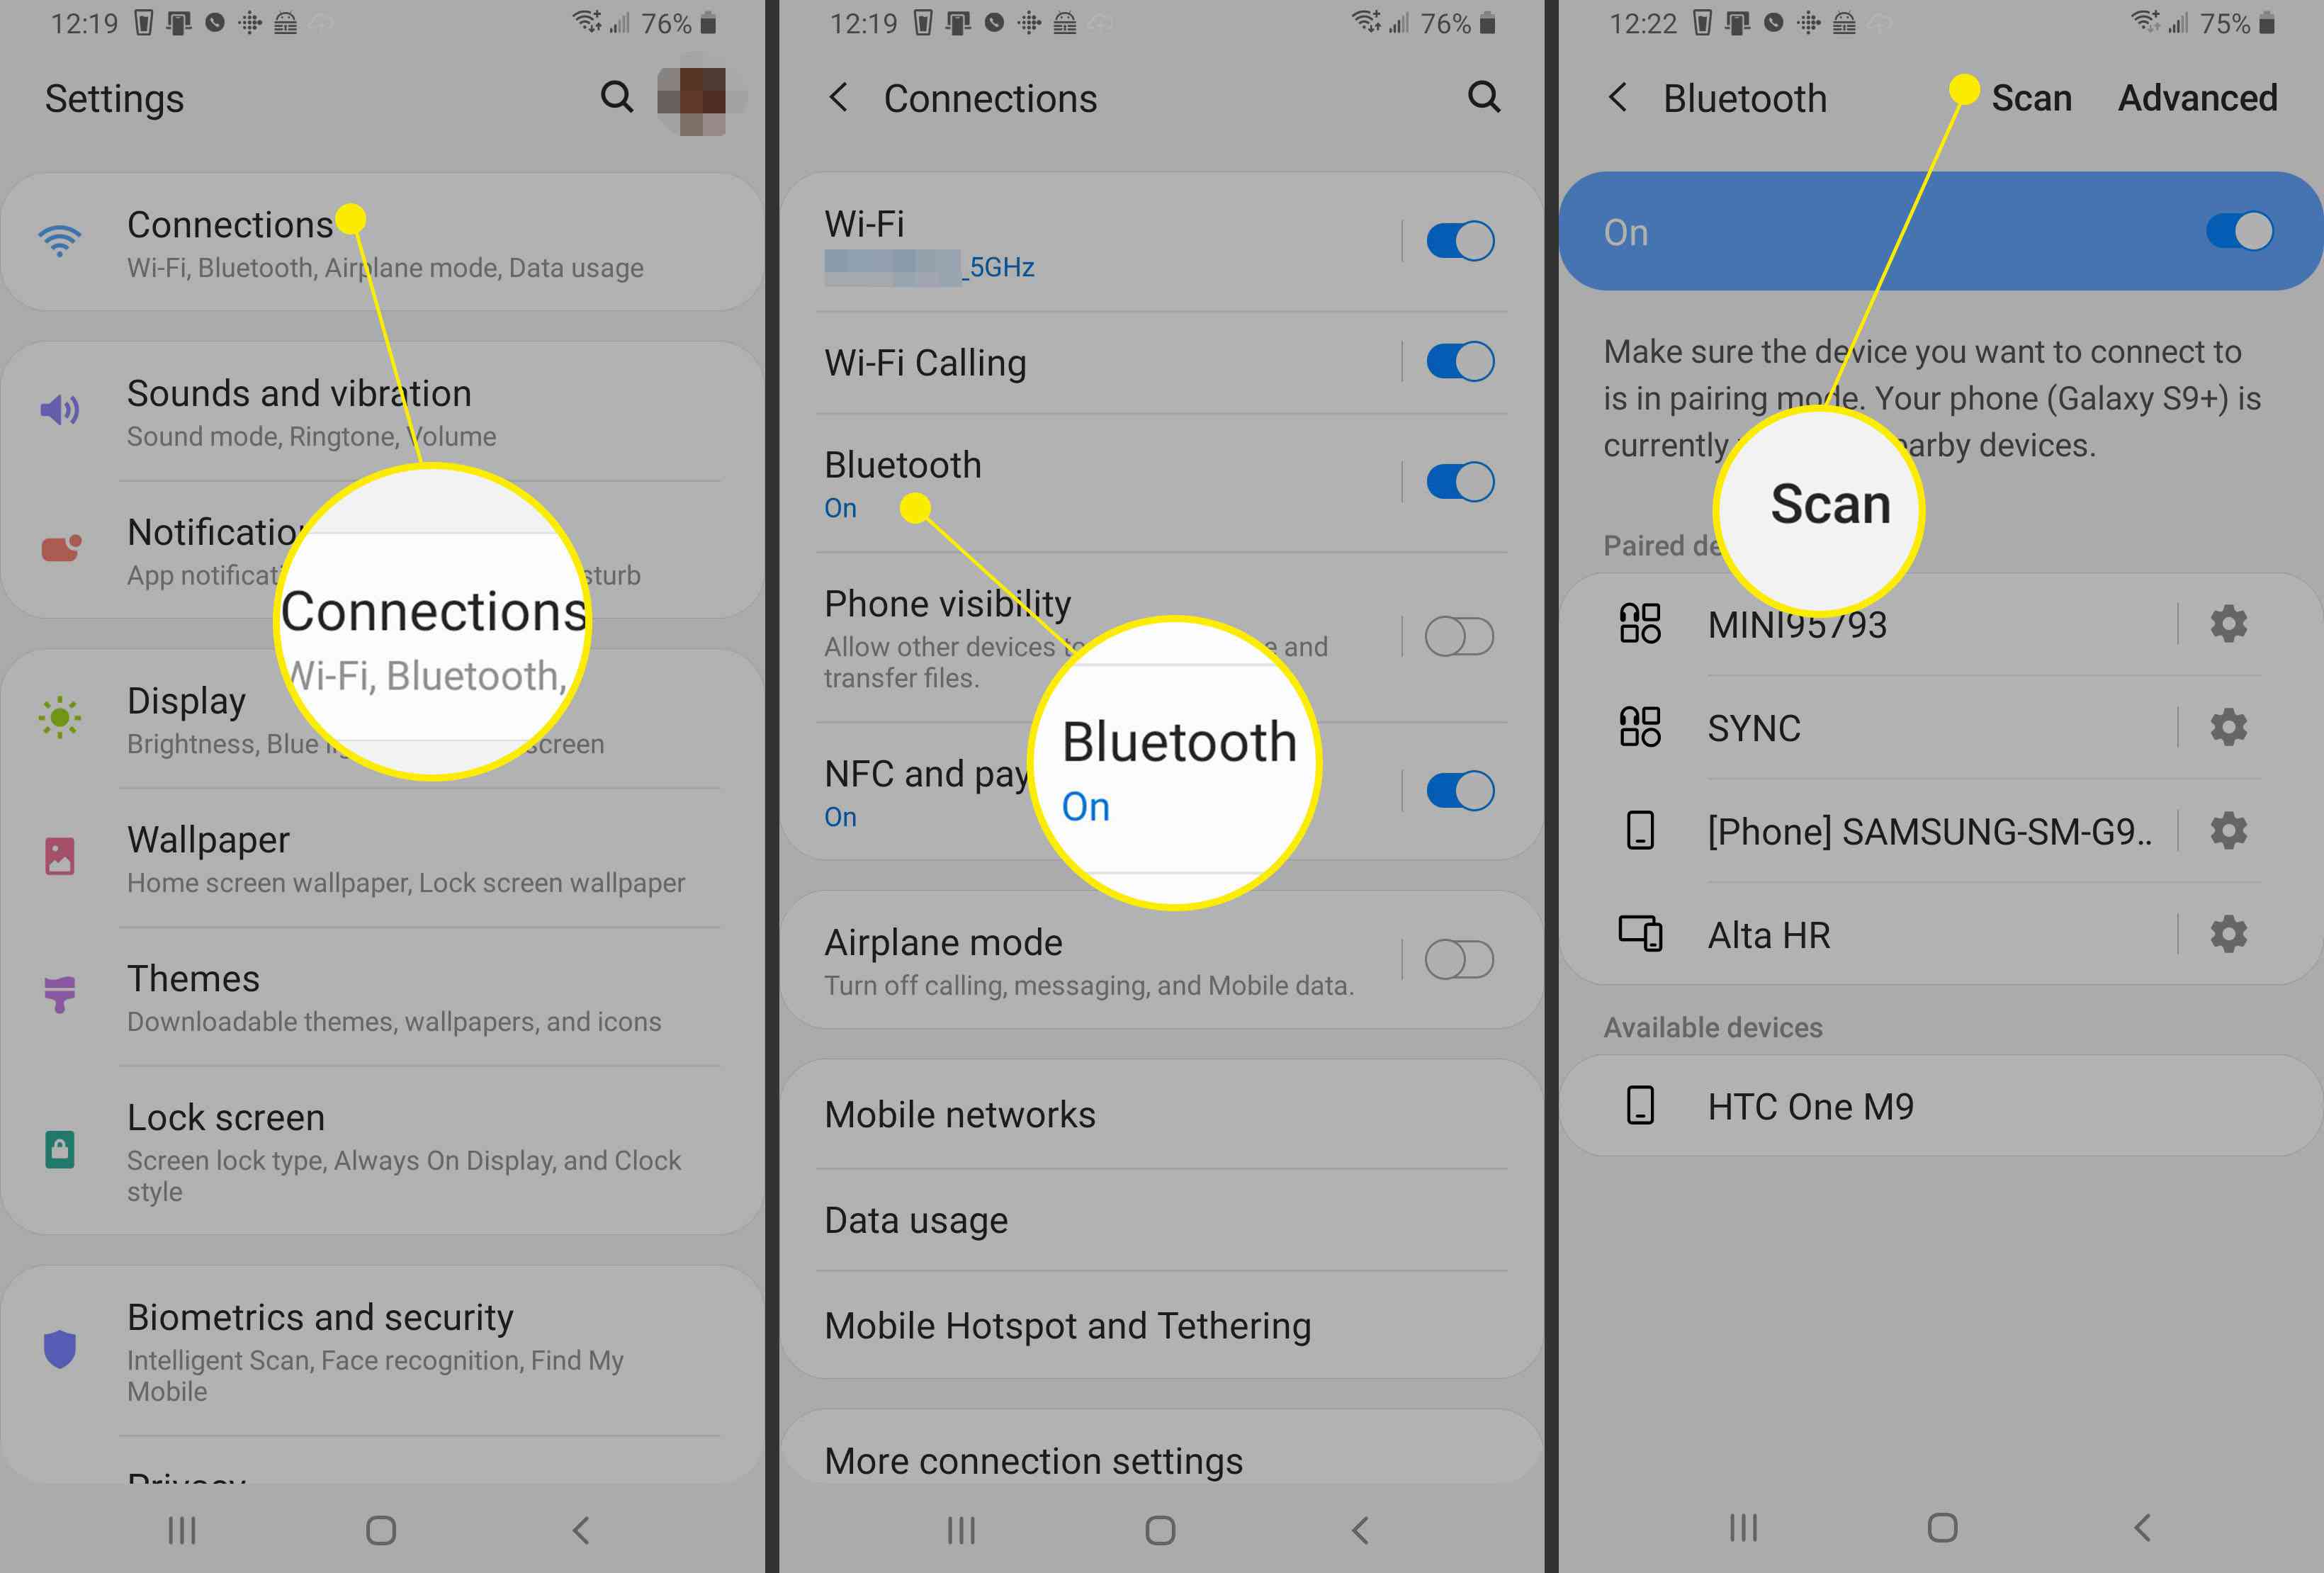 Schermafbeeldingen van een Android-telefoon die het pad tonen om naar Bluetooth-apparaten te scannen